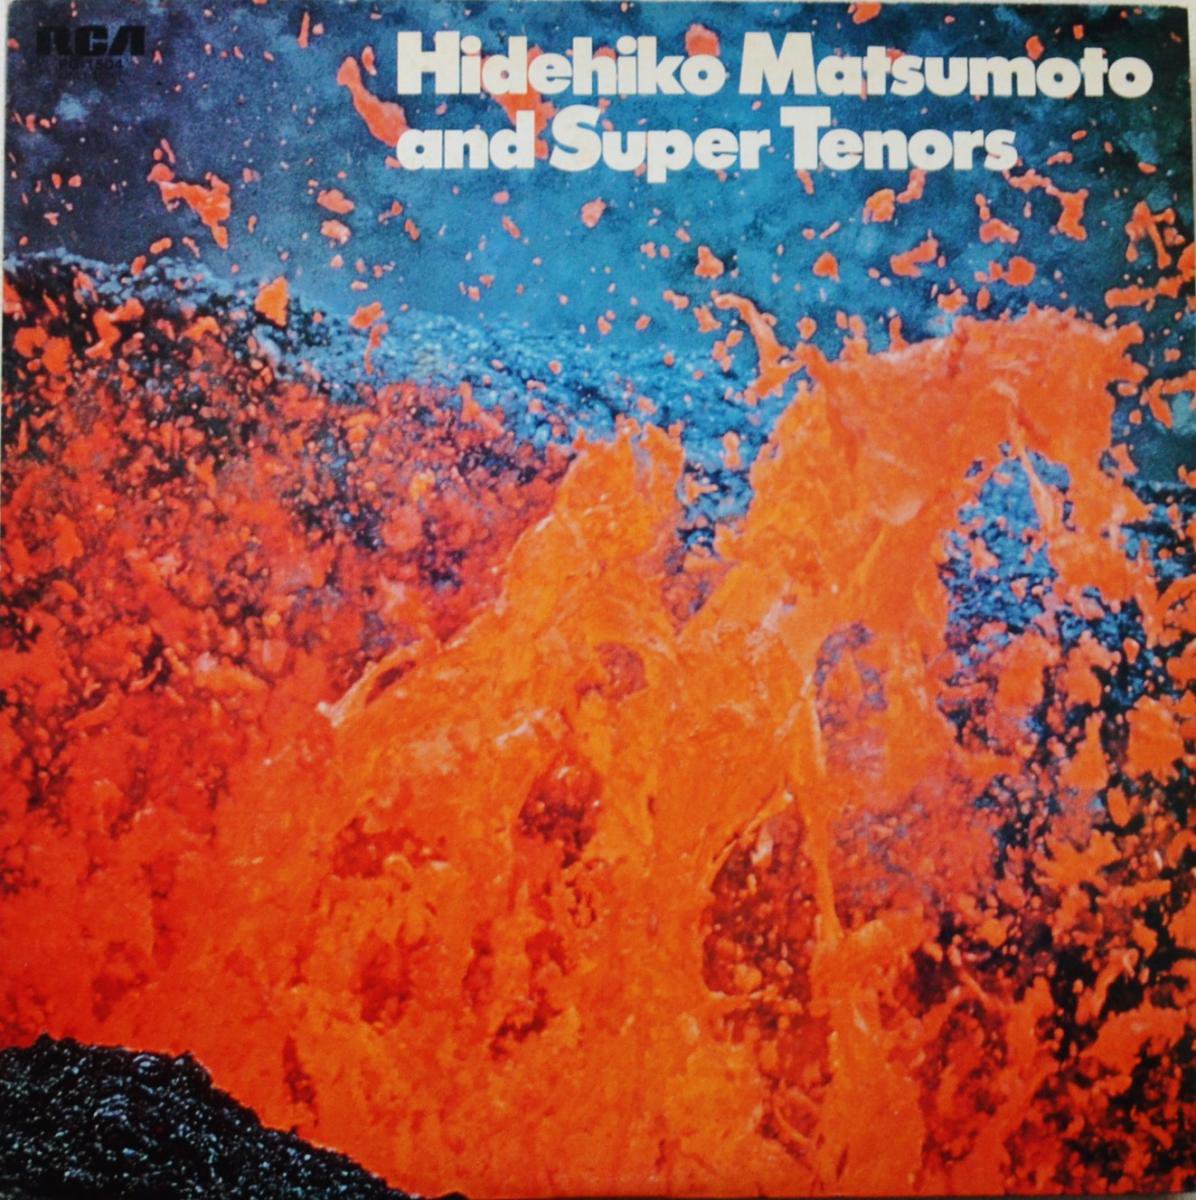 松本英彦とスーパー・テナーズ / HIDEHIKO MATSUMOTO AND SUPER TENORS (LP)